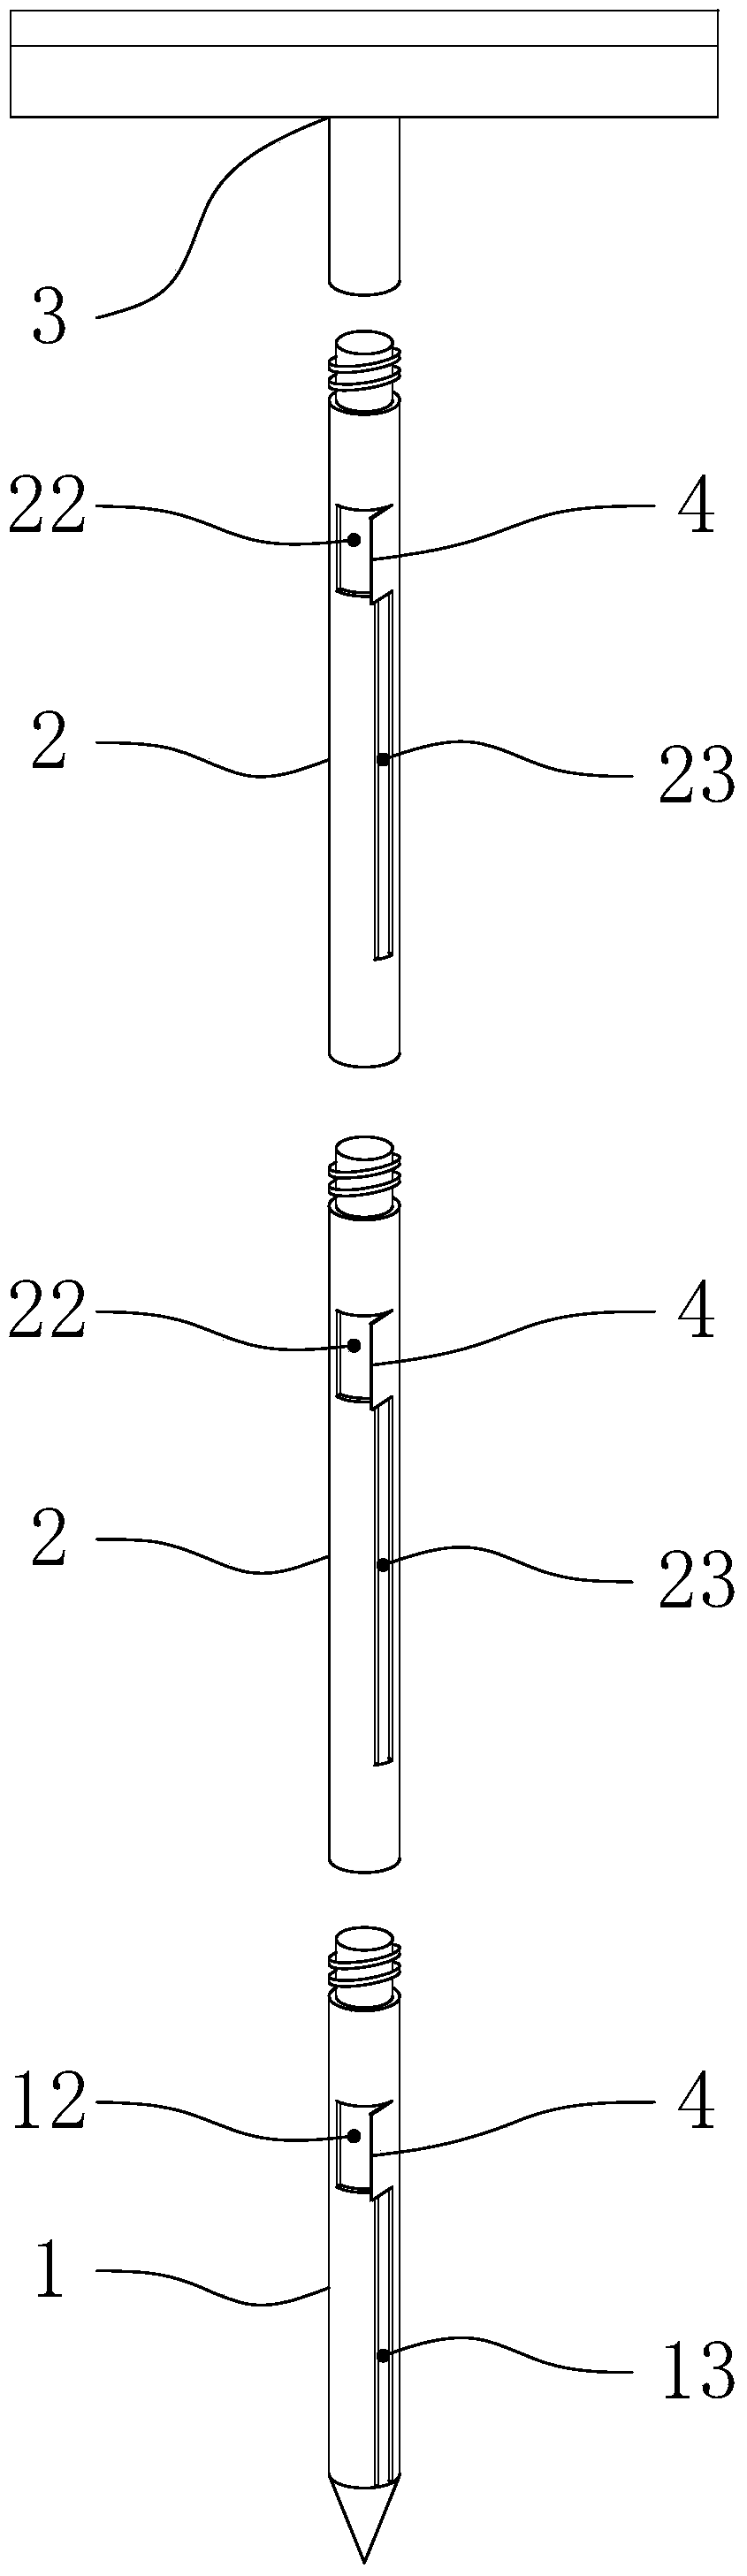 Multi-point distiller's grain sampler and sampling method